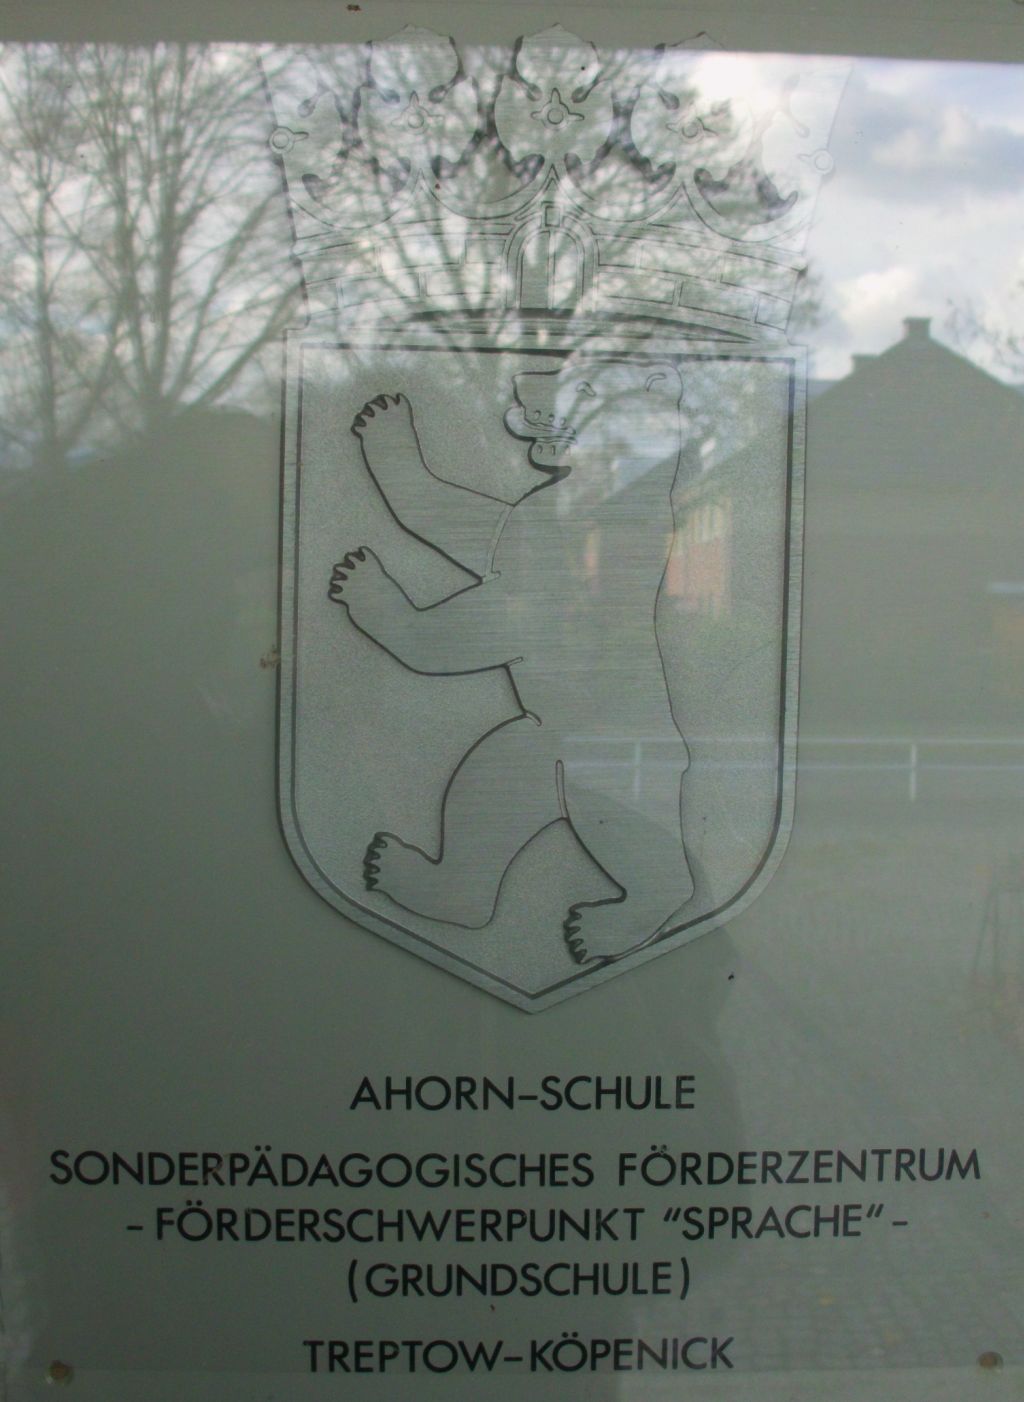 Schild Ahorn-Schule in Berlin-Friedrichshagen